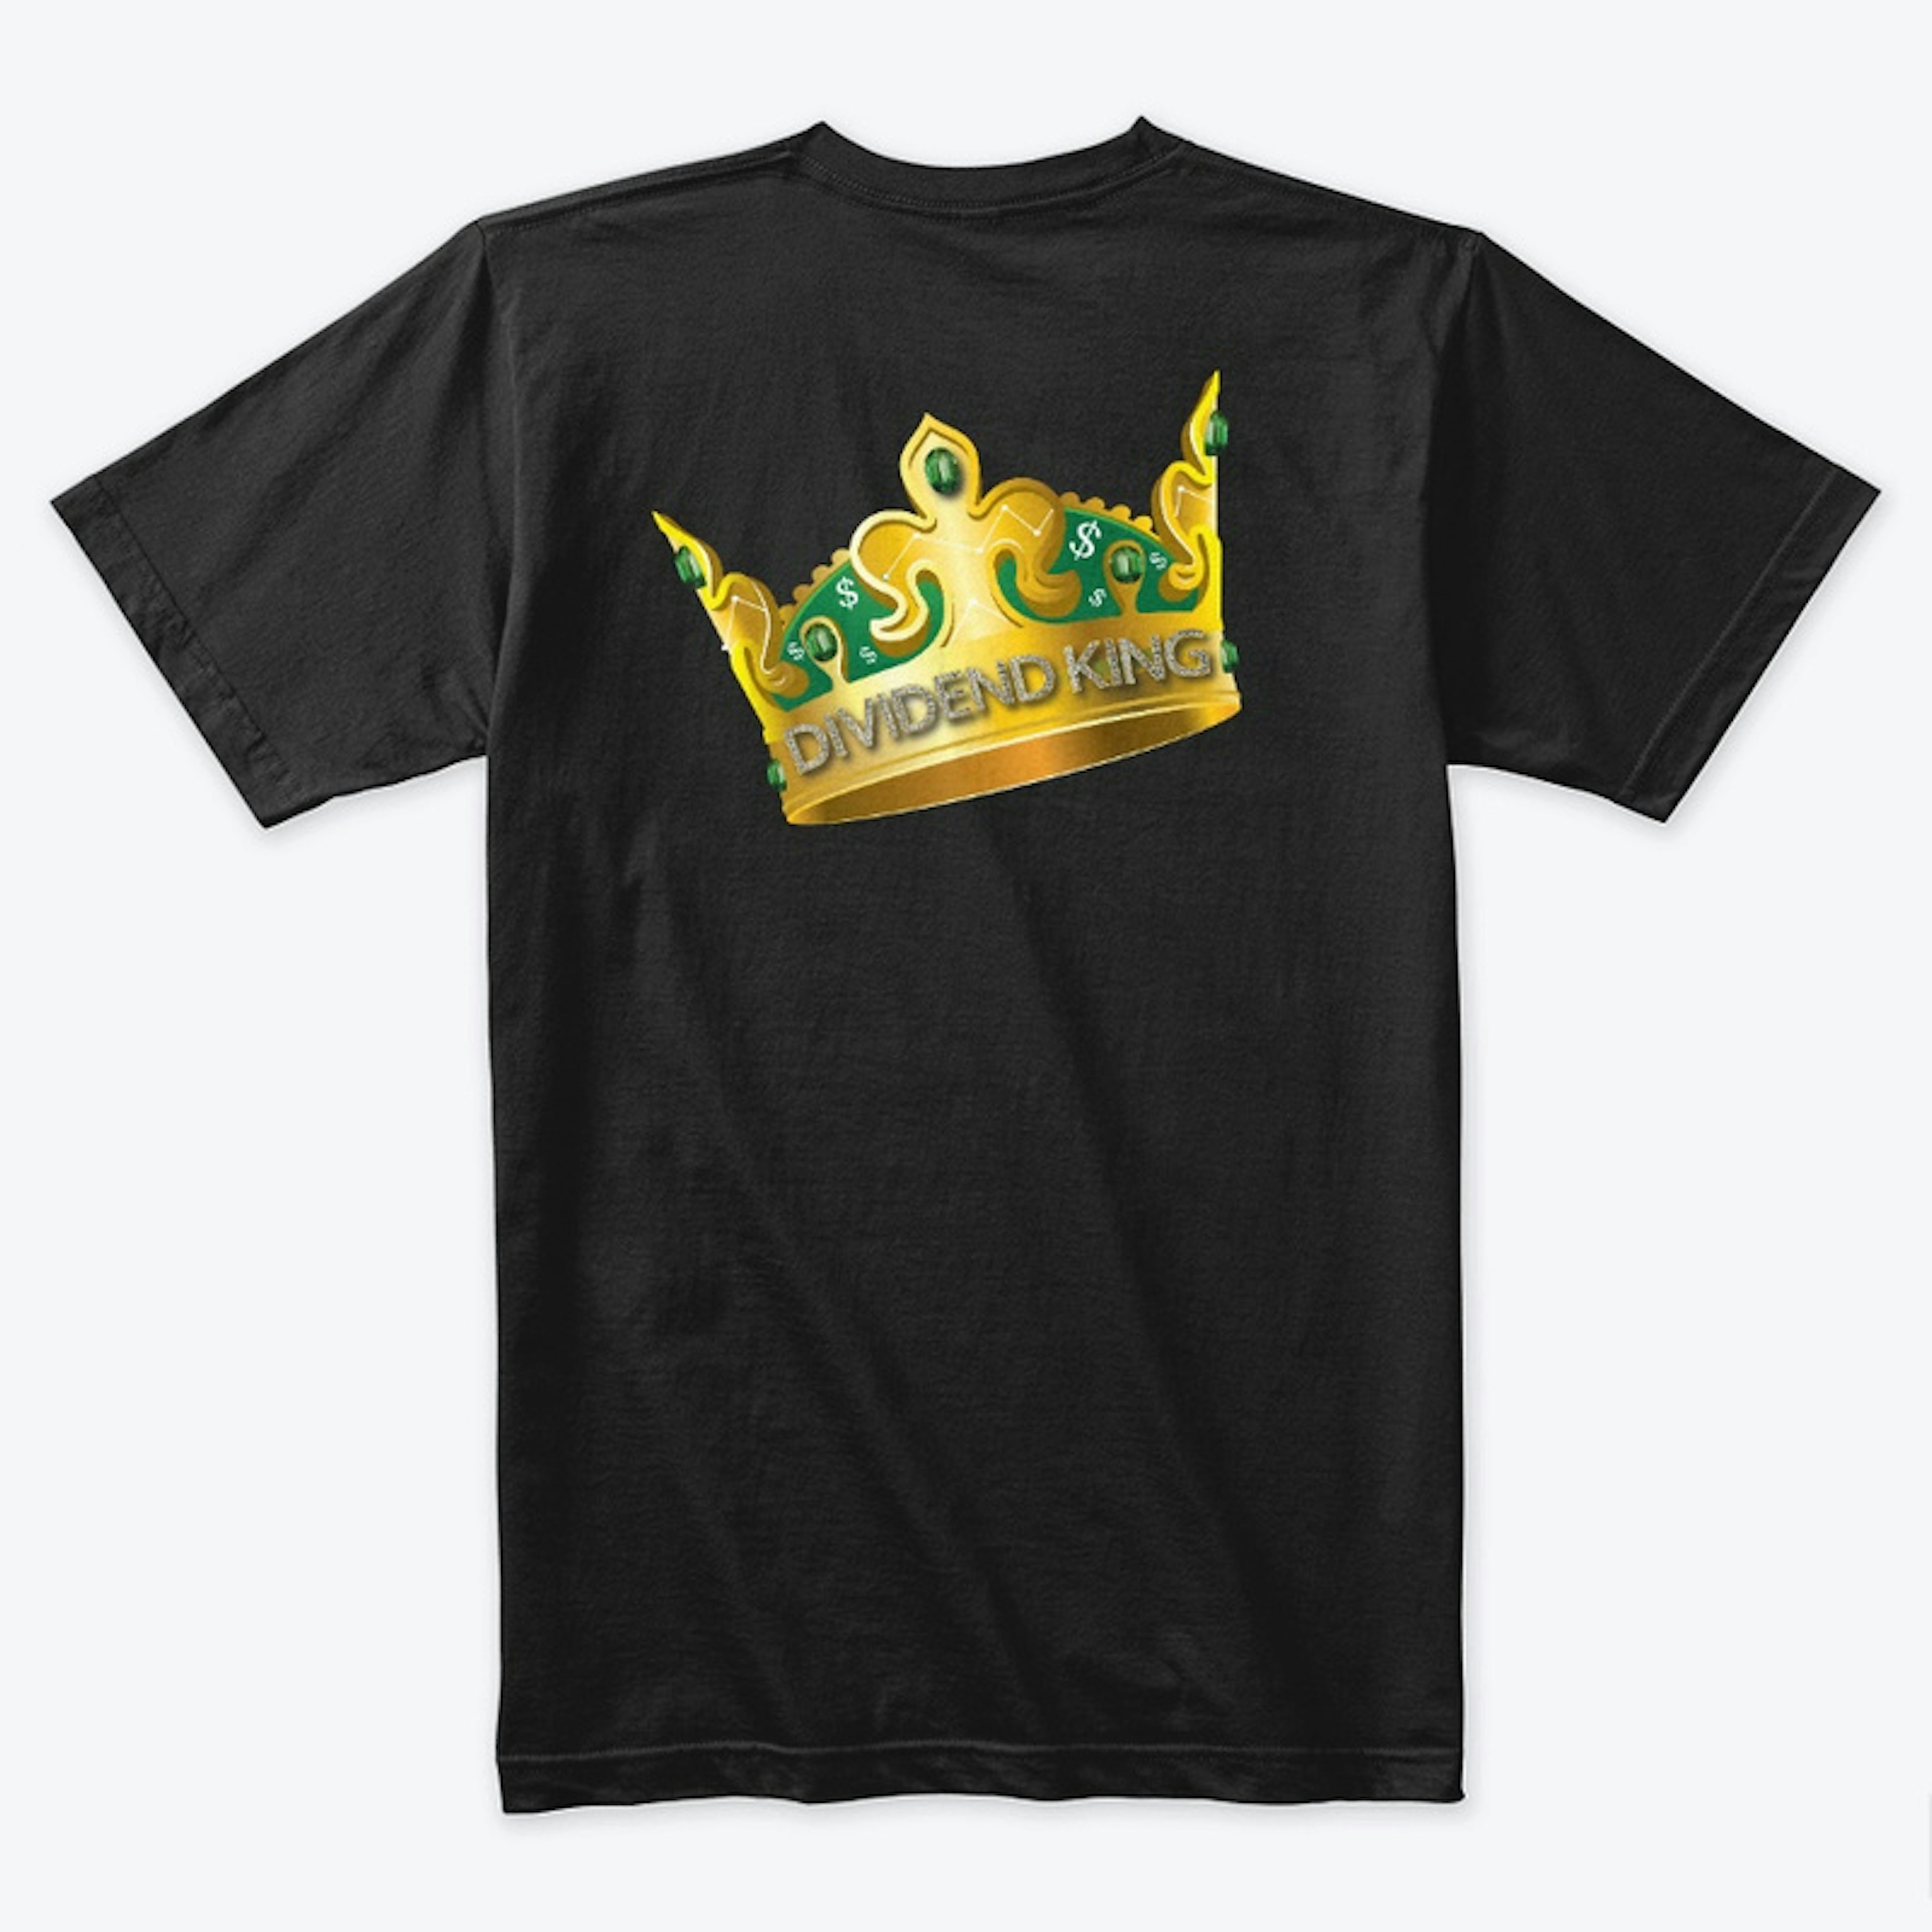 Dividend King (Black T-Shirt)